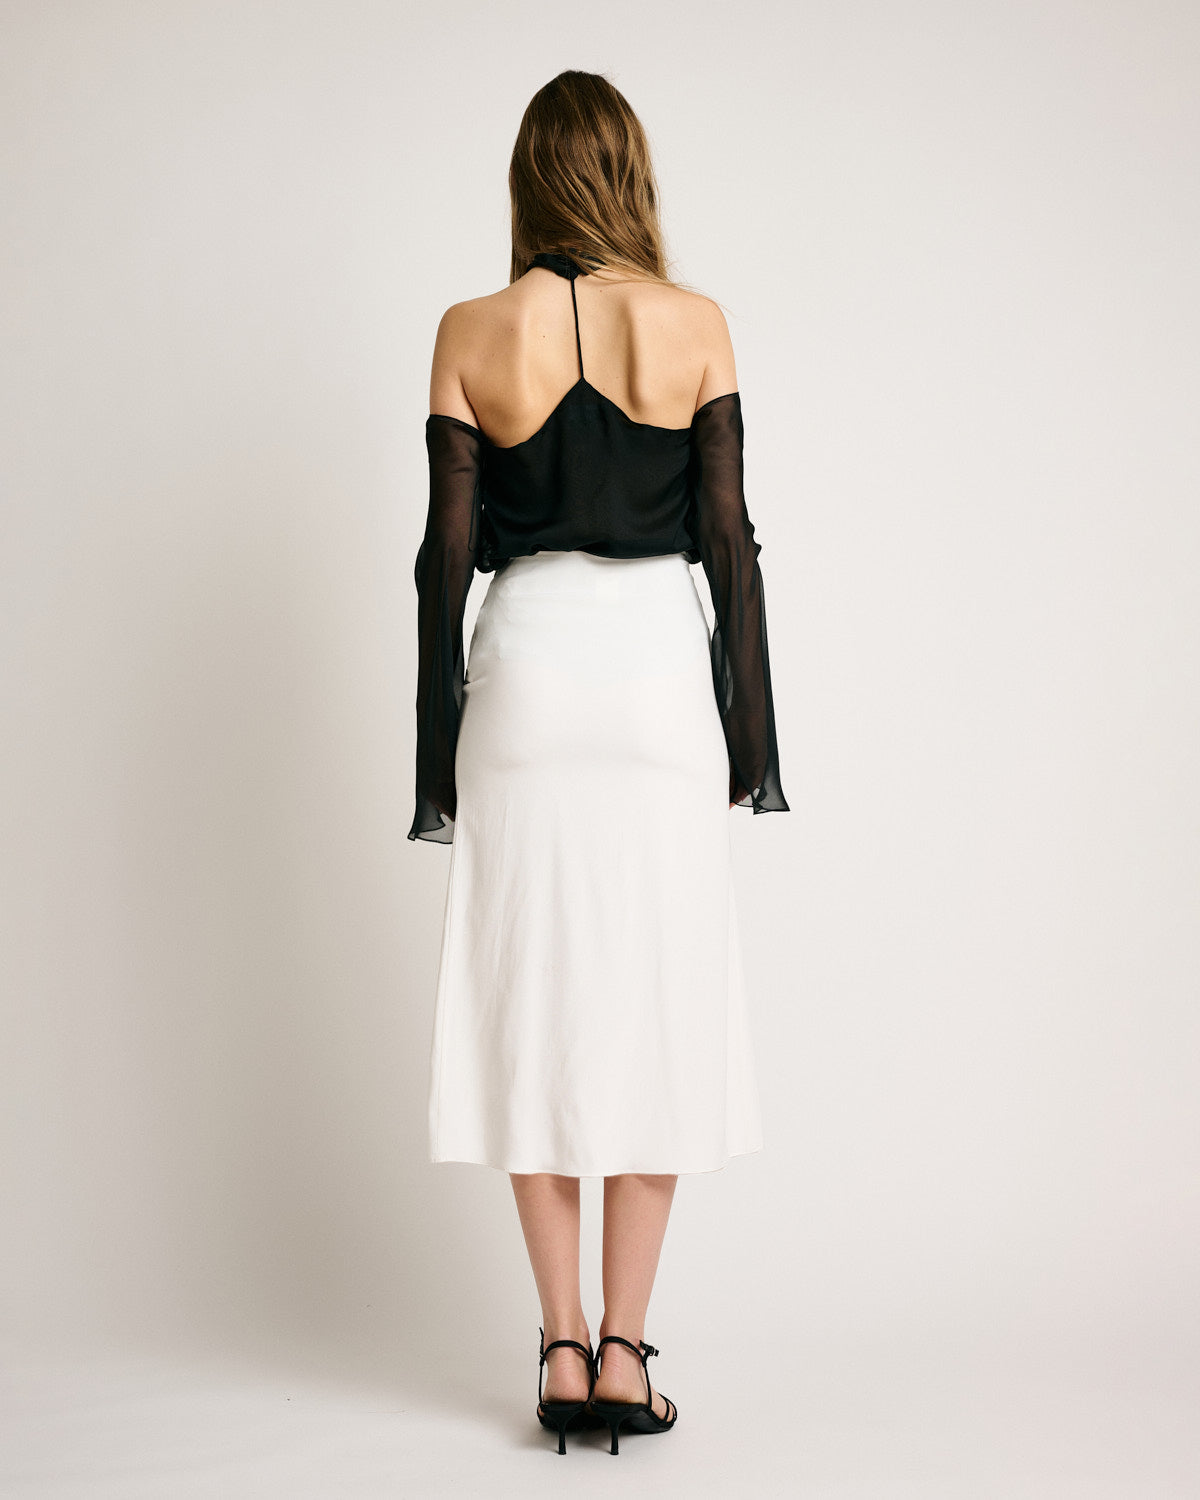 Belle Skirt Solid White Silk Satin Strech